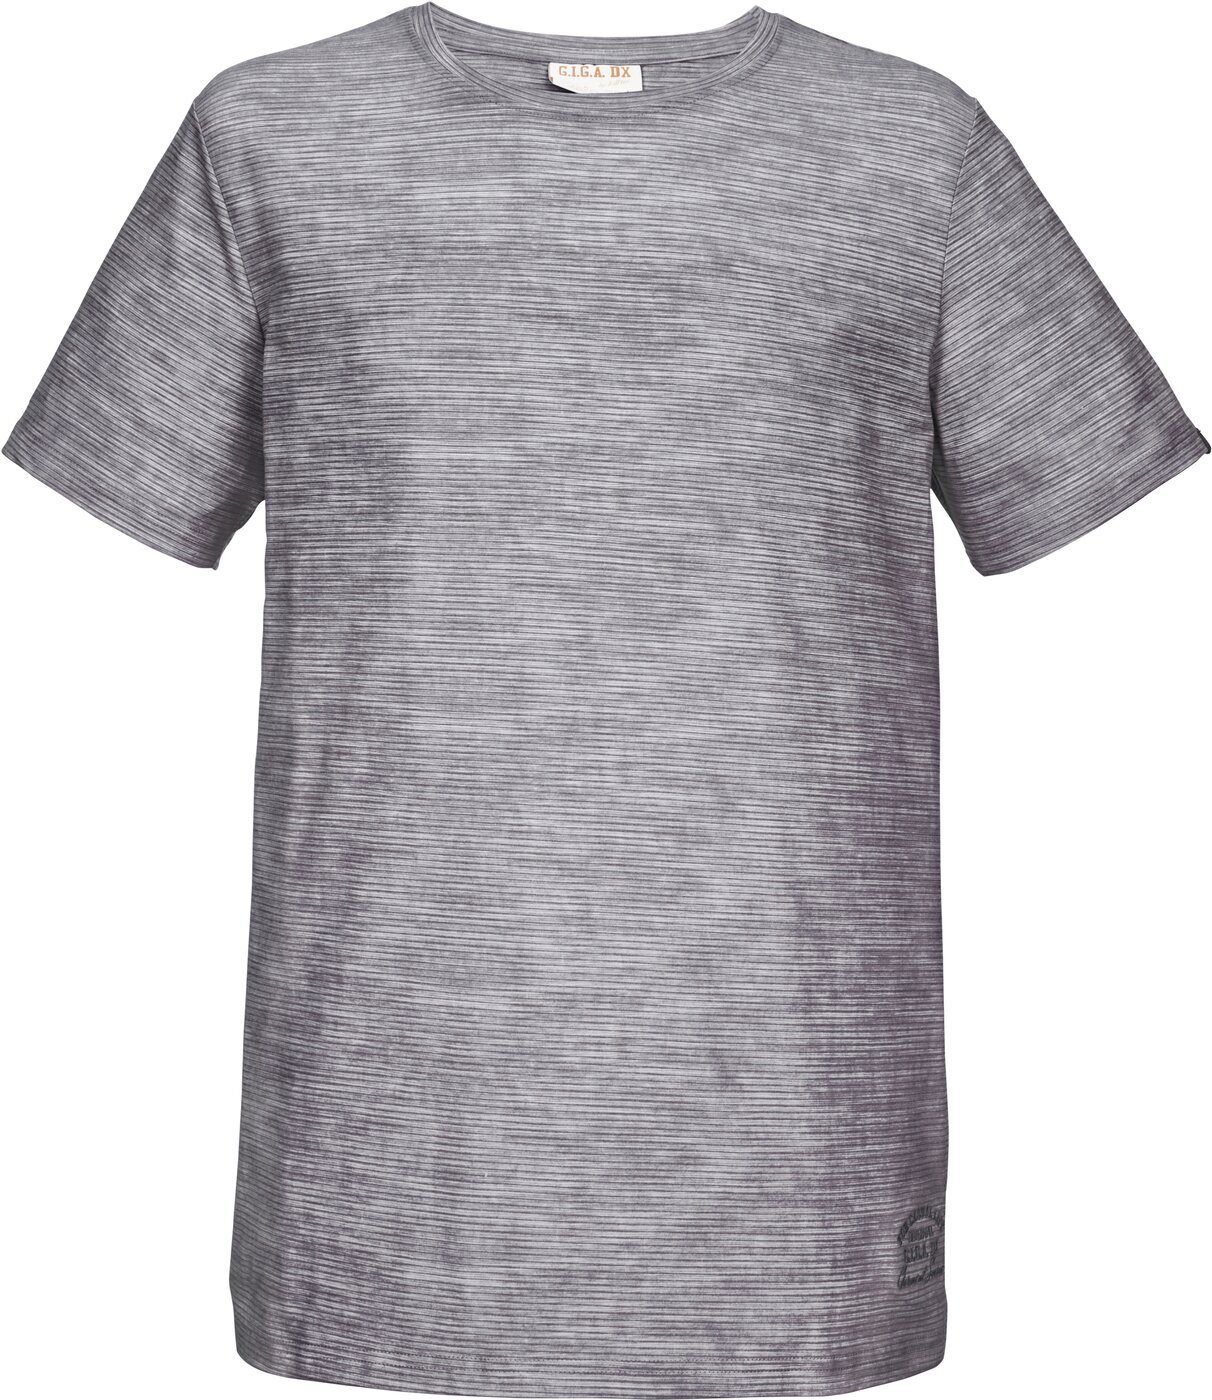 G.I.G.A. DX T-Shirt Melange DX T-Shirt G.I.G.A. gestreifter Optik in Herren